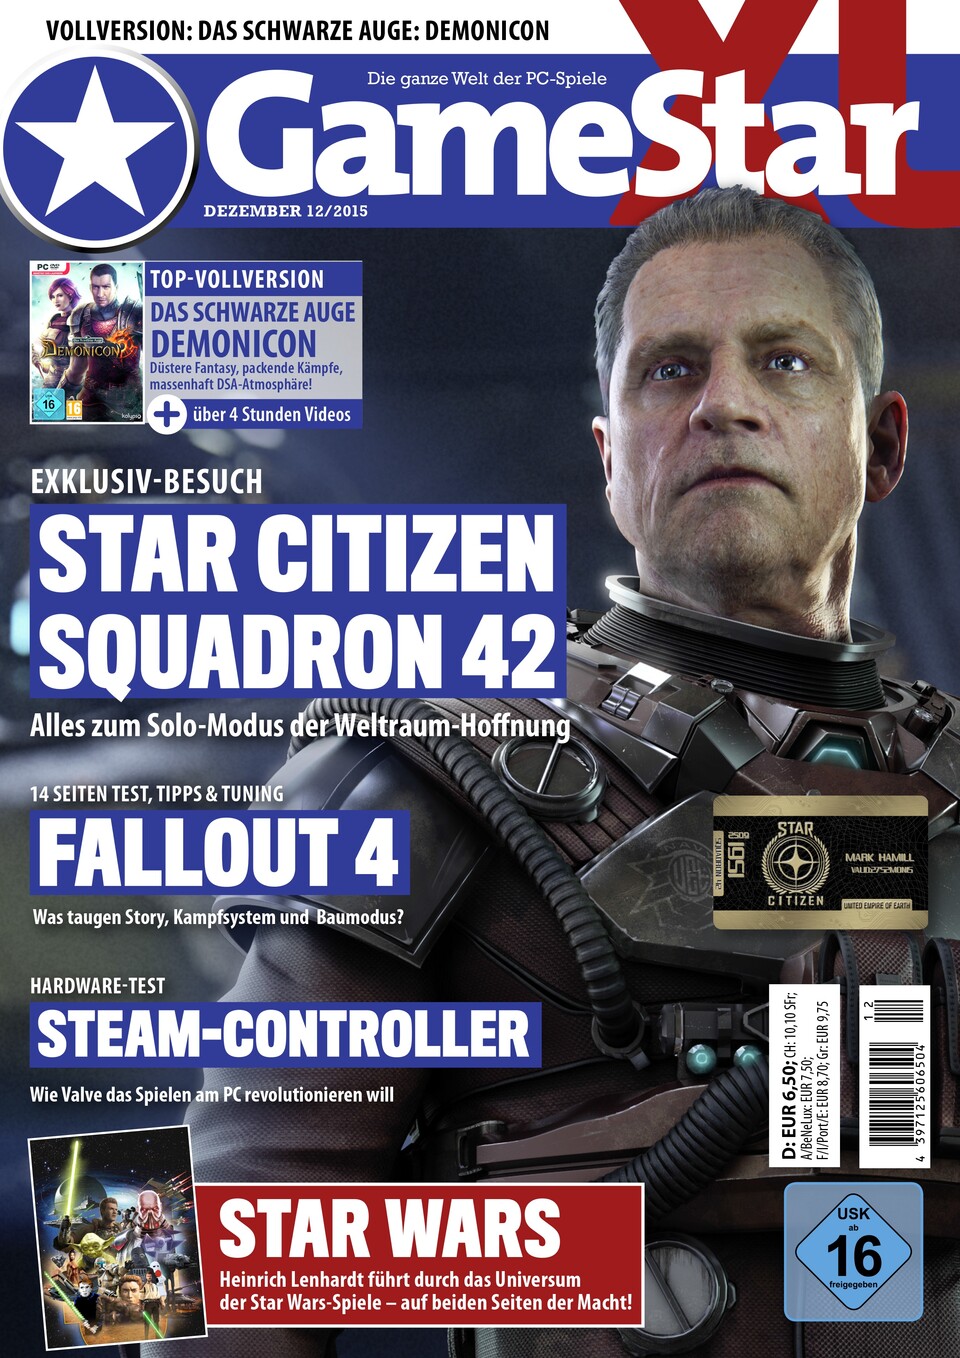 Die GameStar 12/15 mit exklusiven Infos zu Star Citizen: Squadron 42.